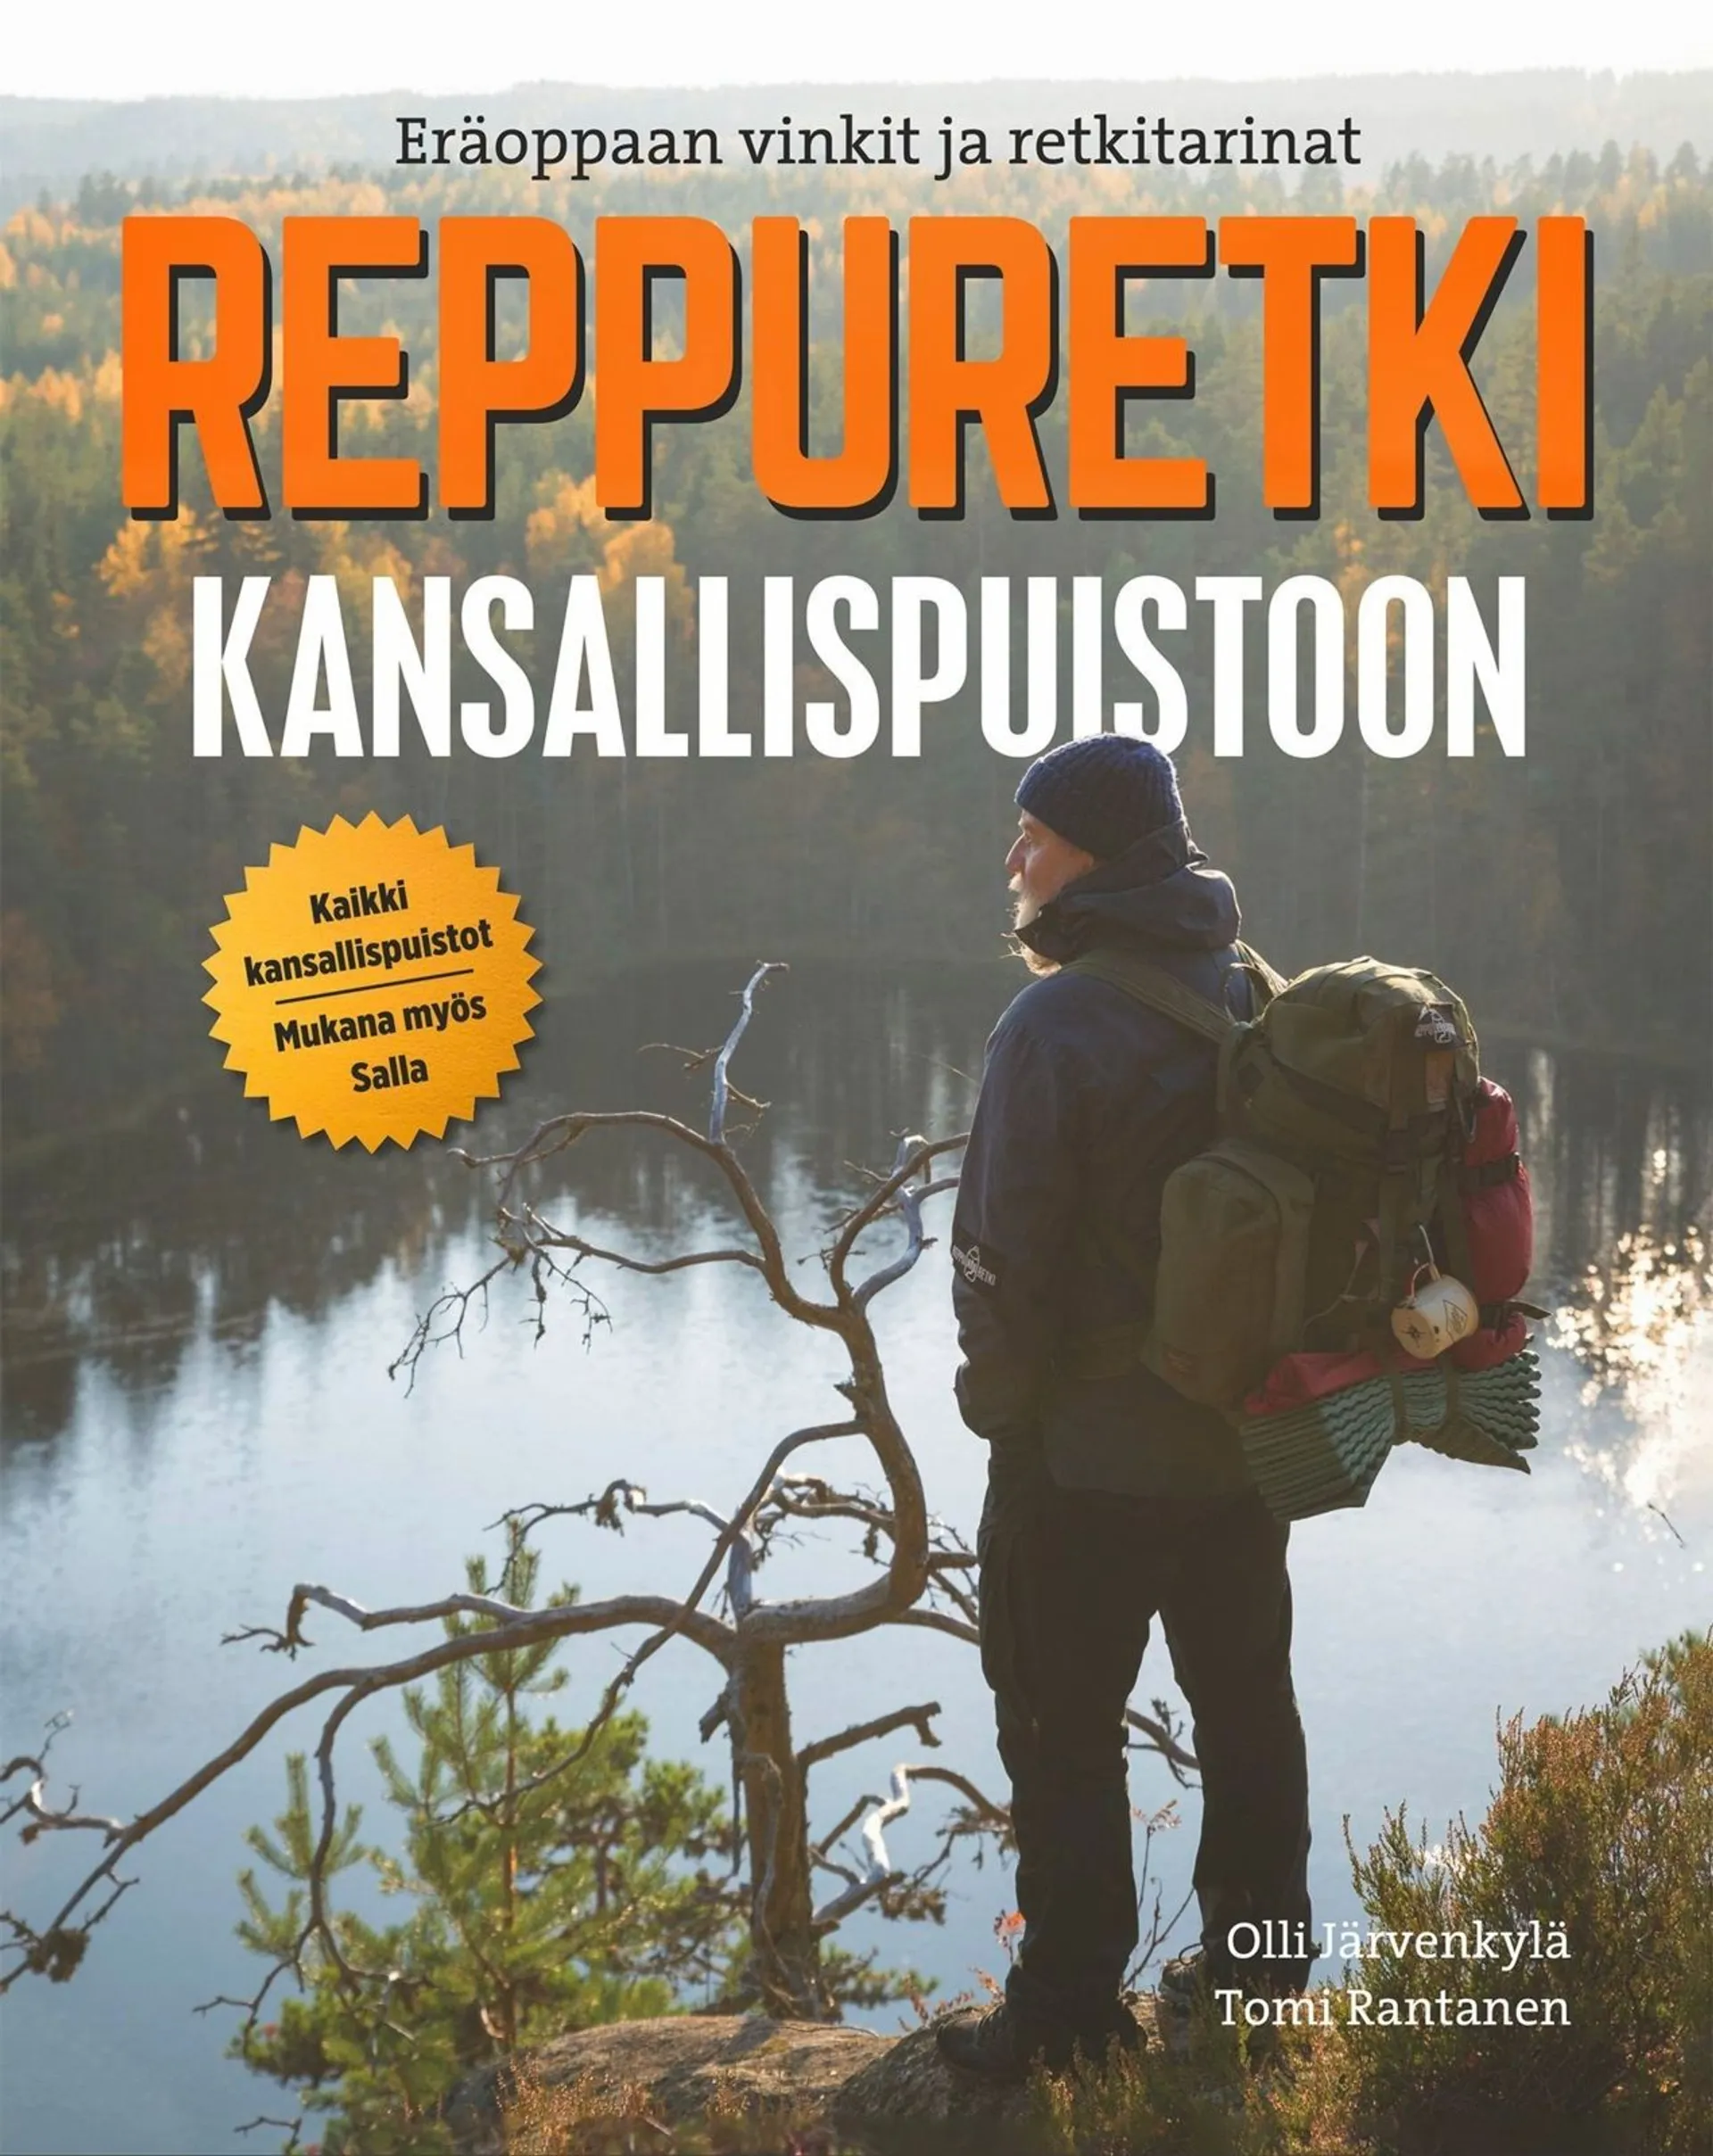 Järvenkylä, Reppuretki kansallispuistoon - Eräoppaan vinkit ja retkitarinat